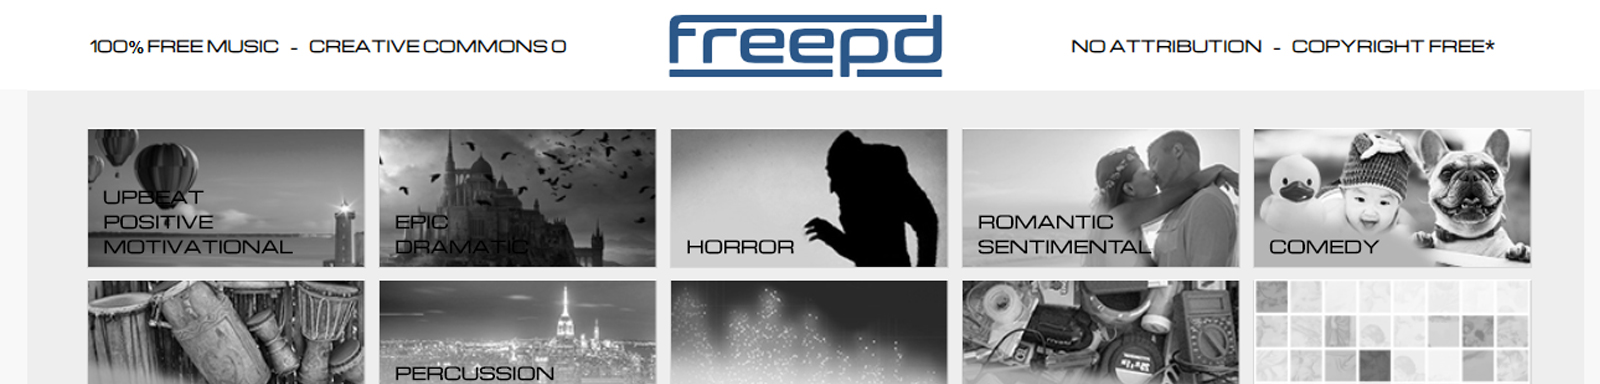 אתר-freepd-לאודיו-לגמרי-בחינם